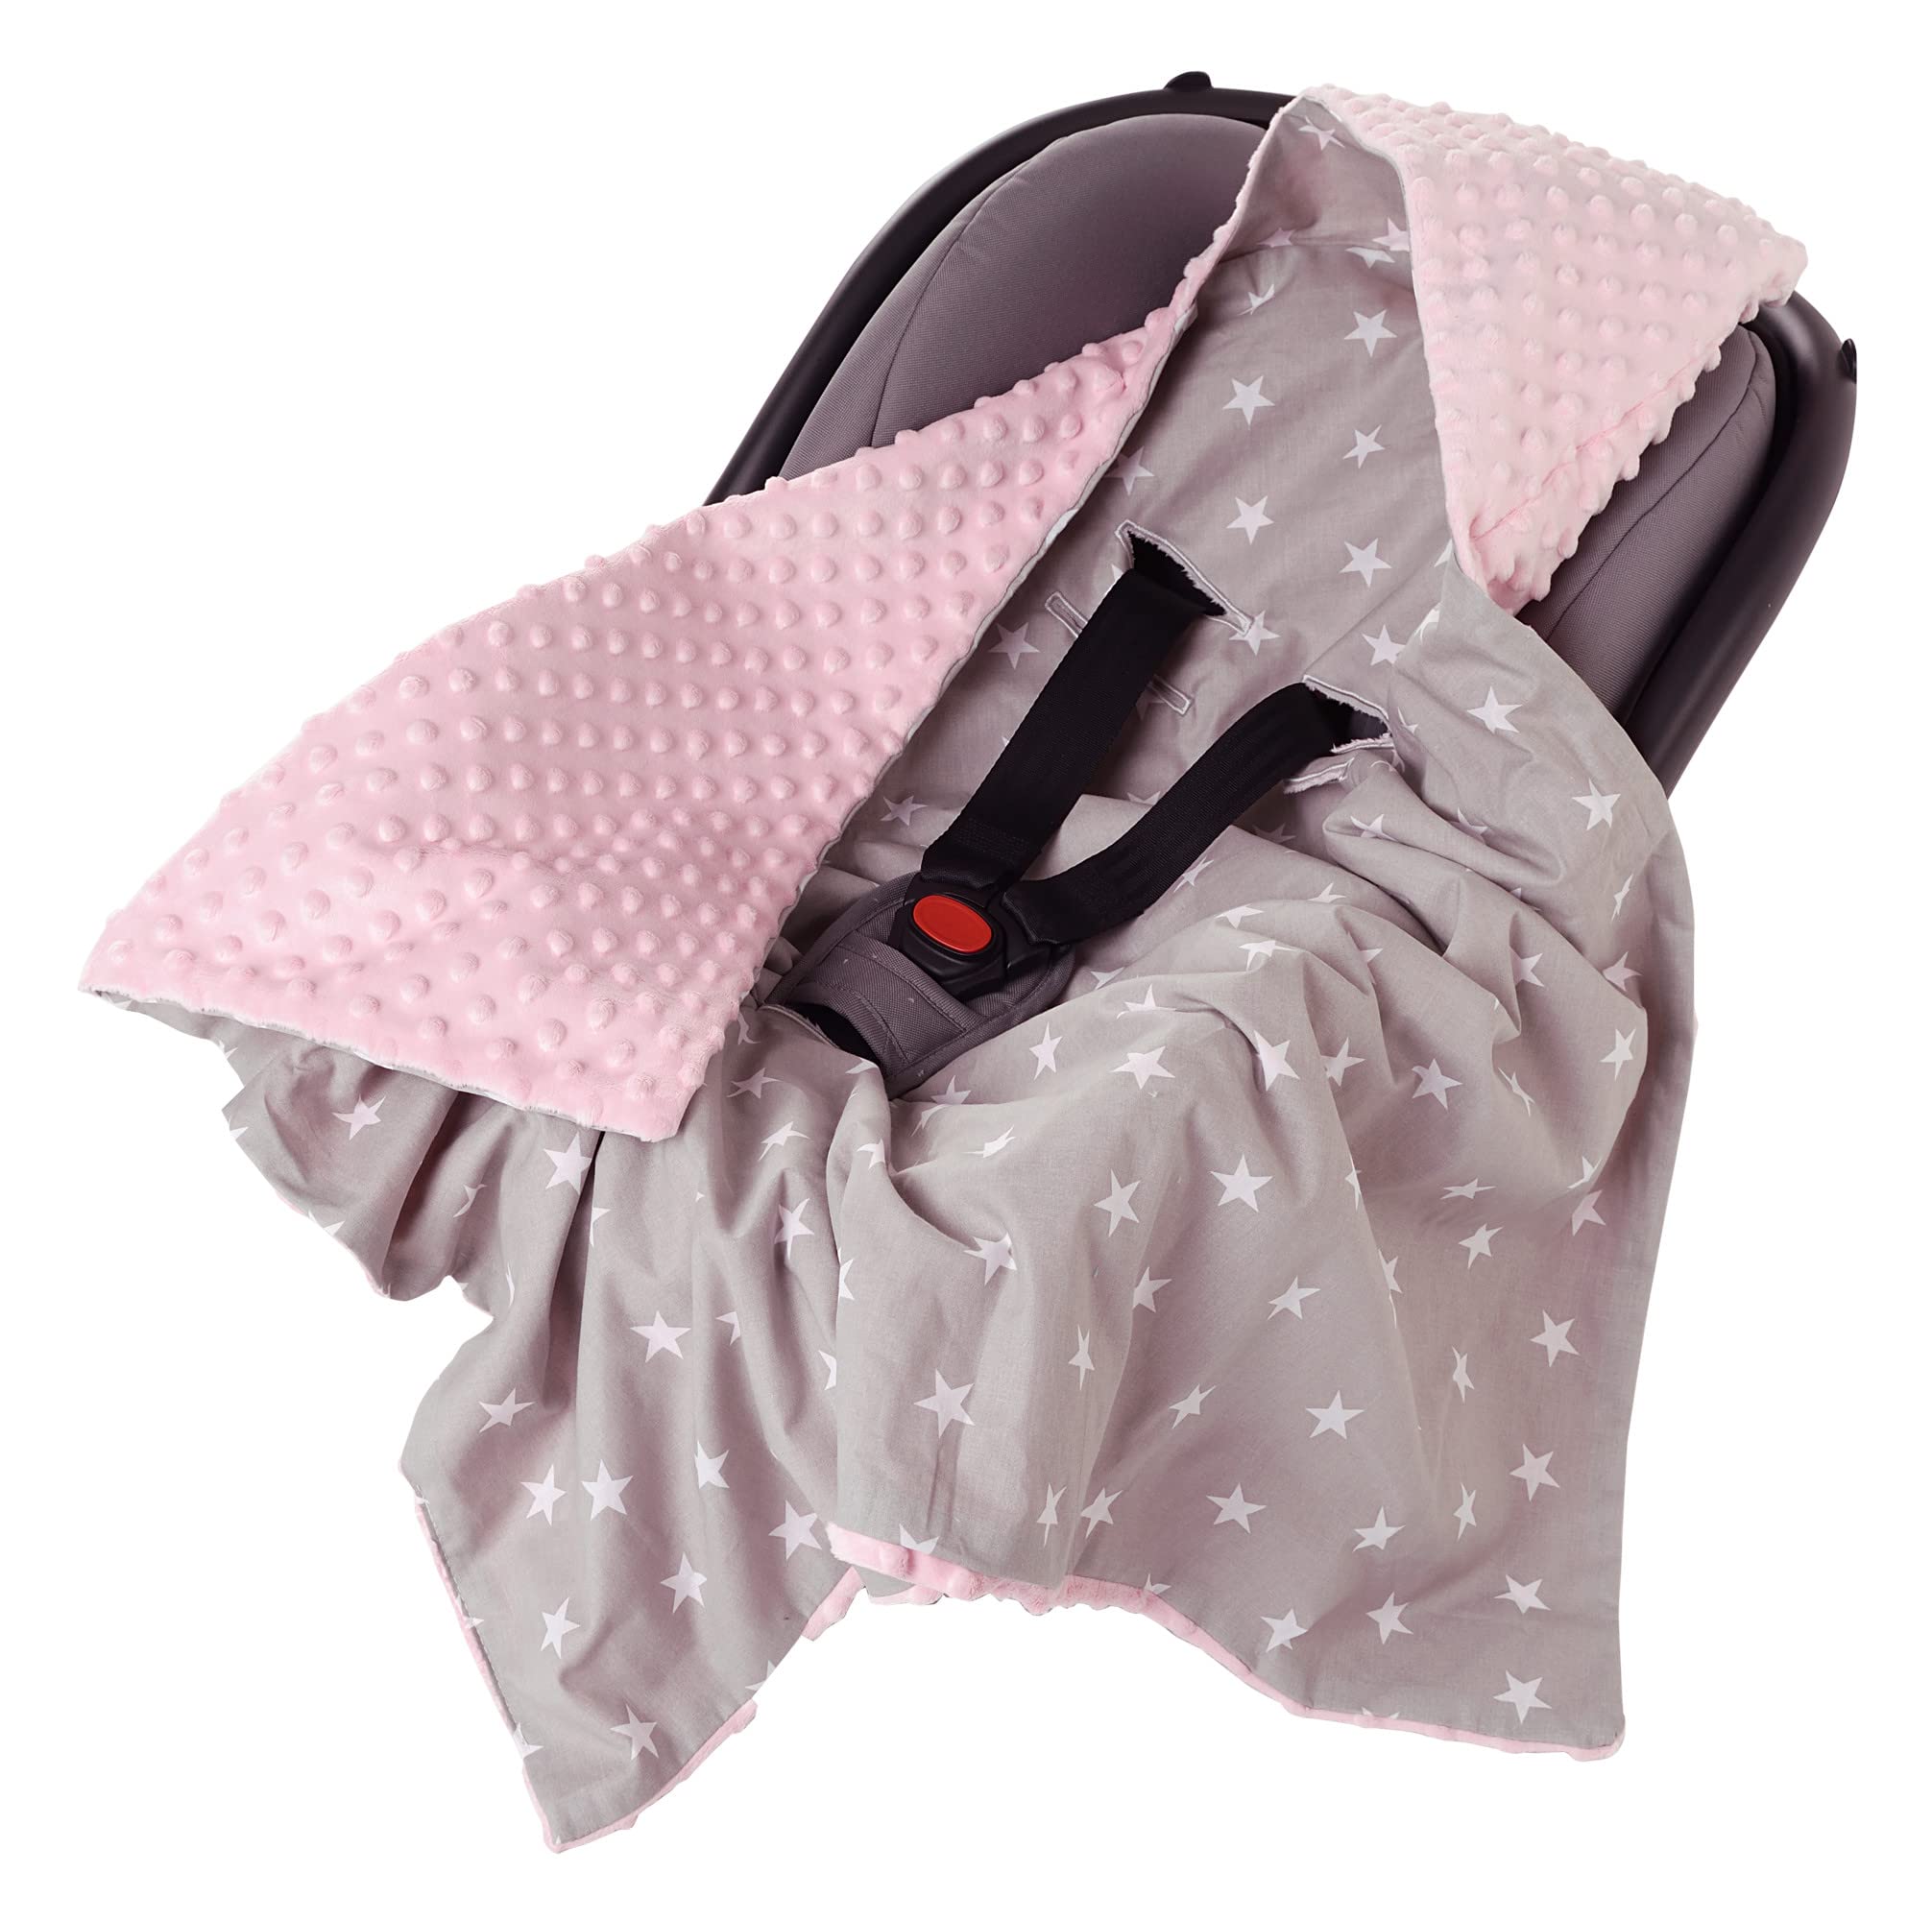 Medi Partners Einschlagdecke 100% Baumwolle 85x85cm Kuscheldecke für Kinderwagen Babyschale universal Baby Decke doppelseitig Babydecke Buggy Autositz (weiße Sterne mit rosa Minky)